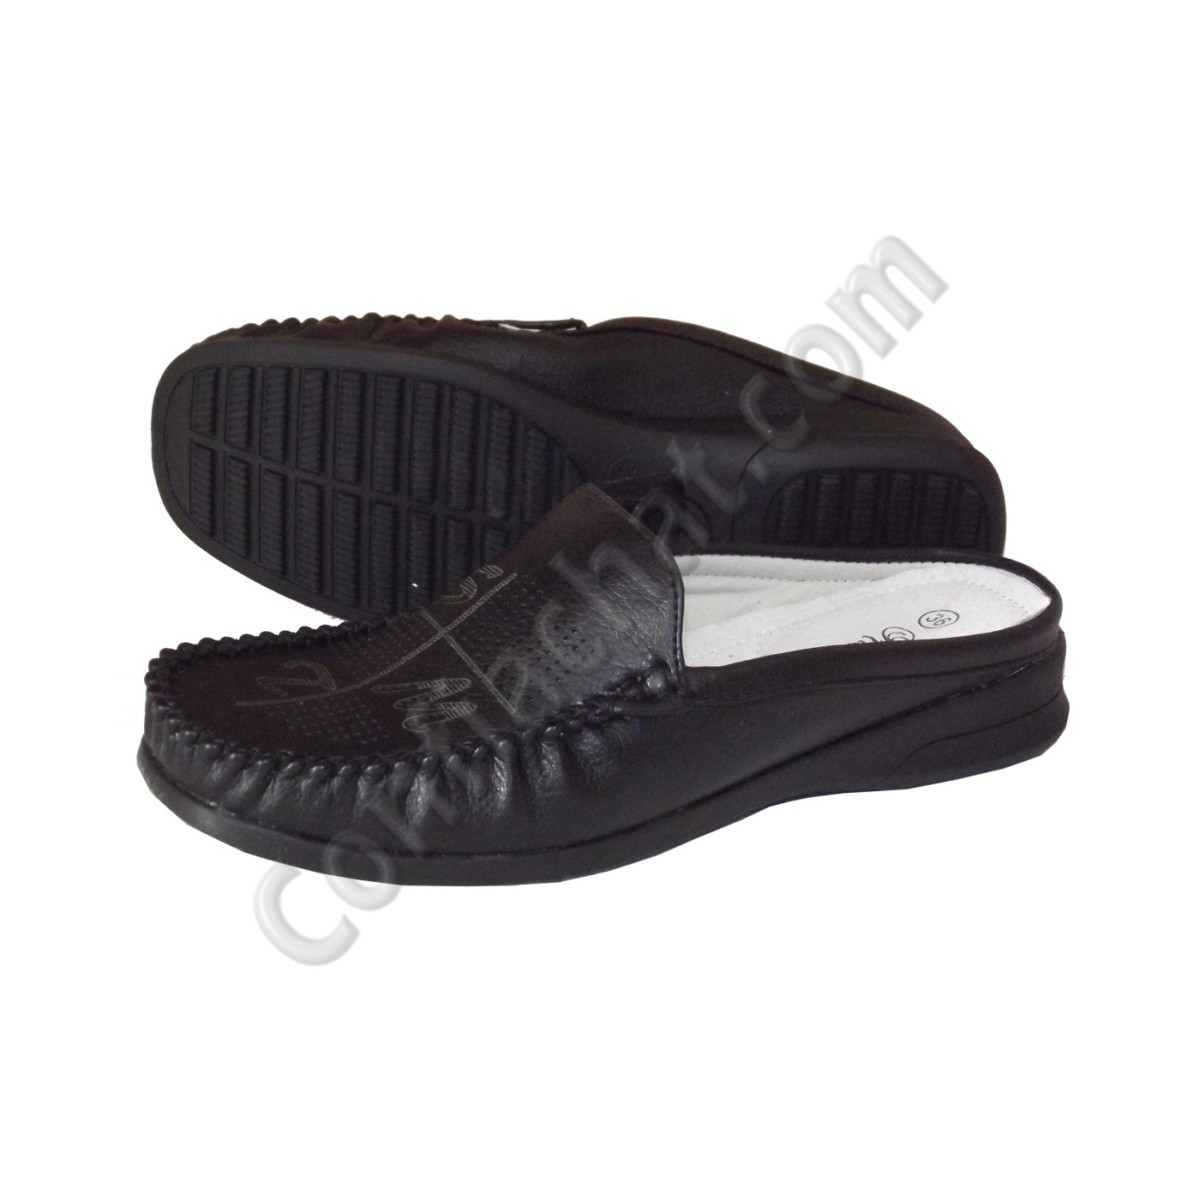 MOCASSINS SABOTS SEMELLE SOUPLE FEMME Shoes Schuhe Zapatos (555 6